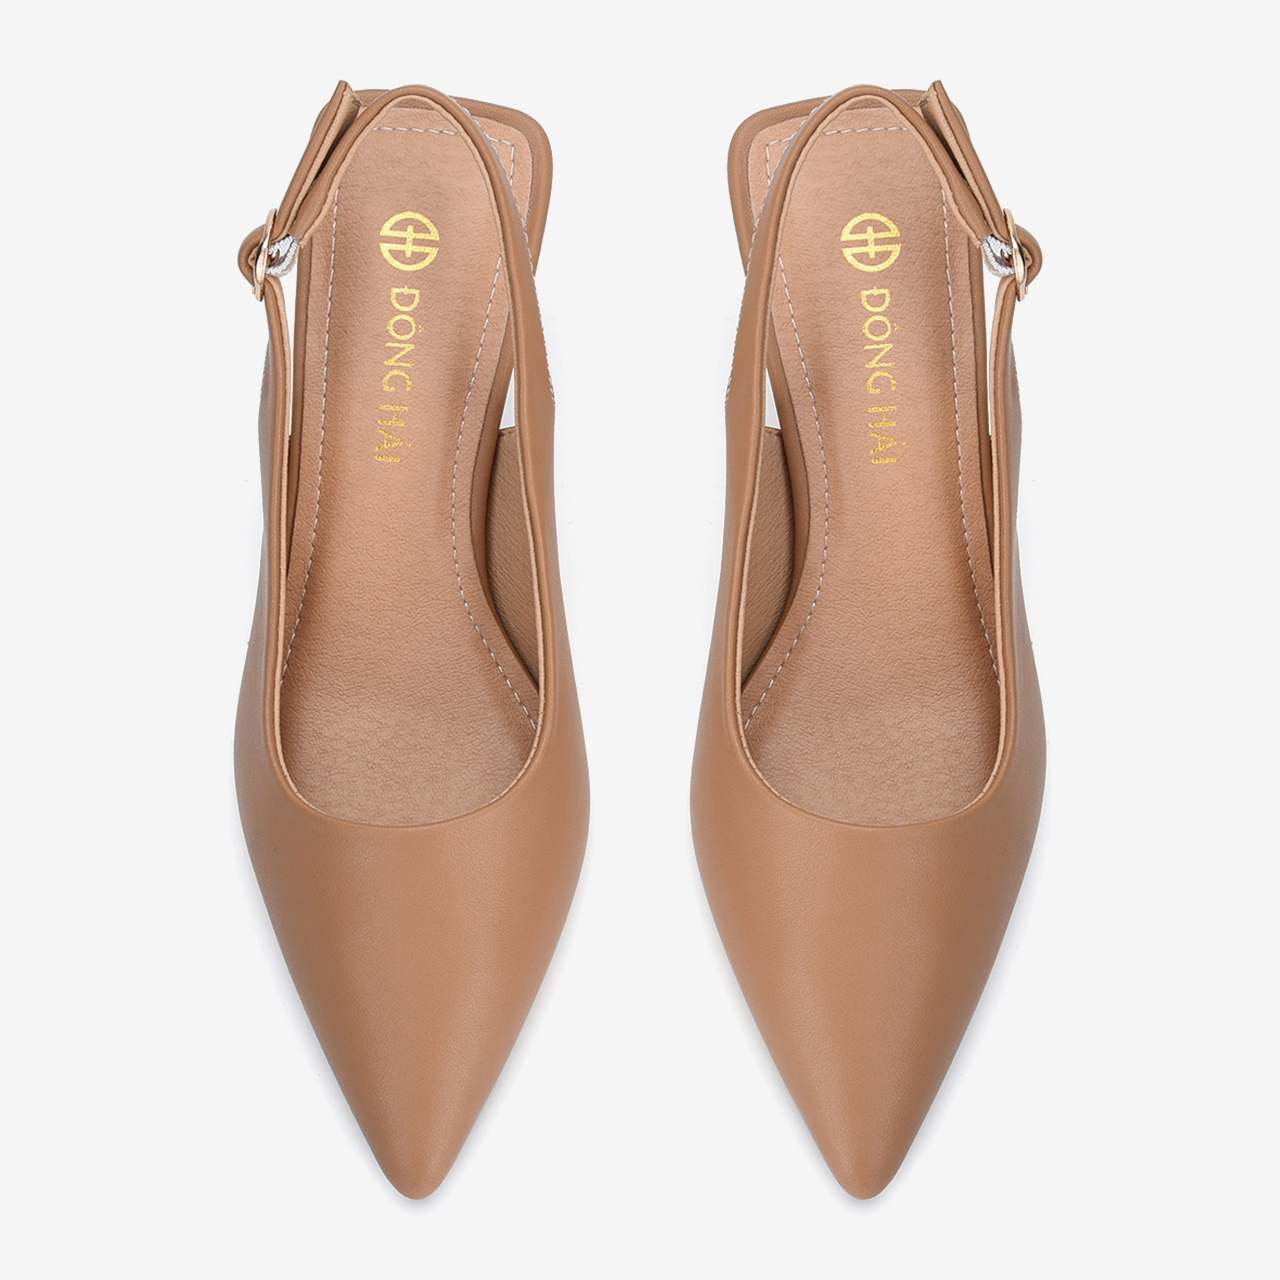 Giày cao gót nữ Đông Hải thiết kế Slingback mũi nhọn thanh lịch gót nhọn nữ tính cao 7cm vừa phải -  G5808